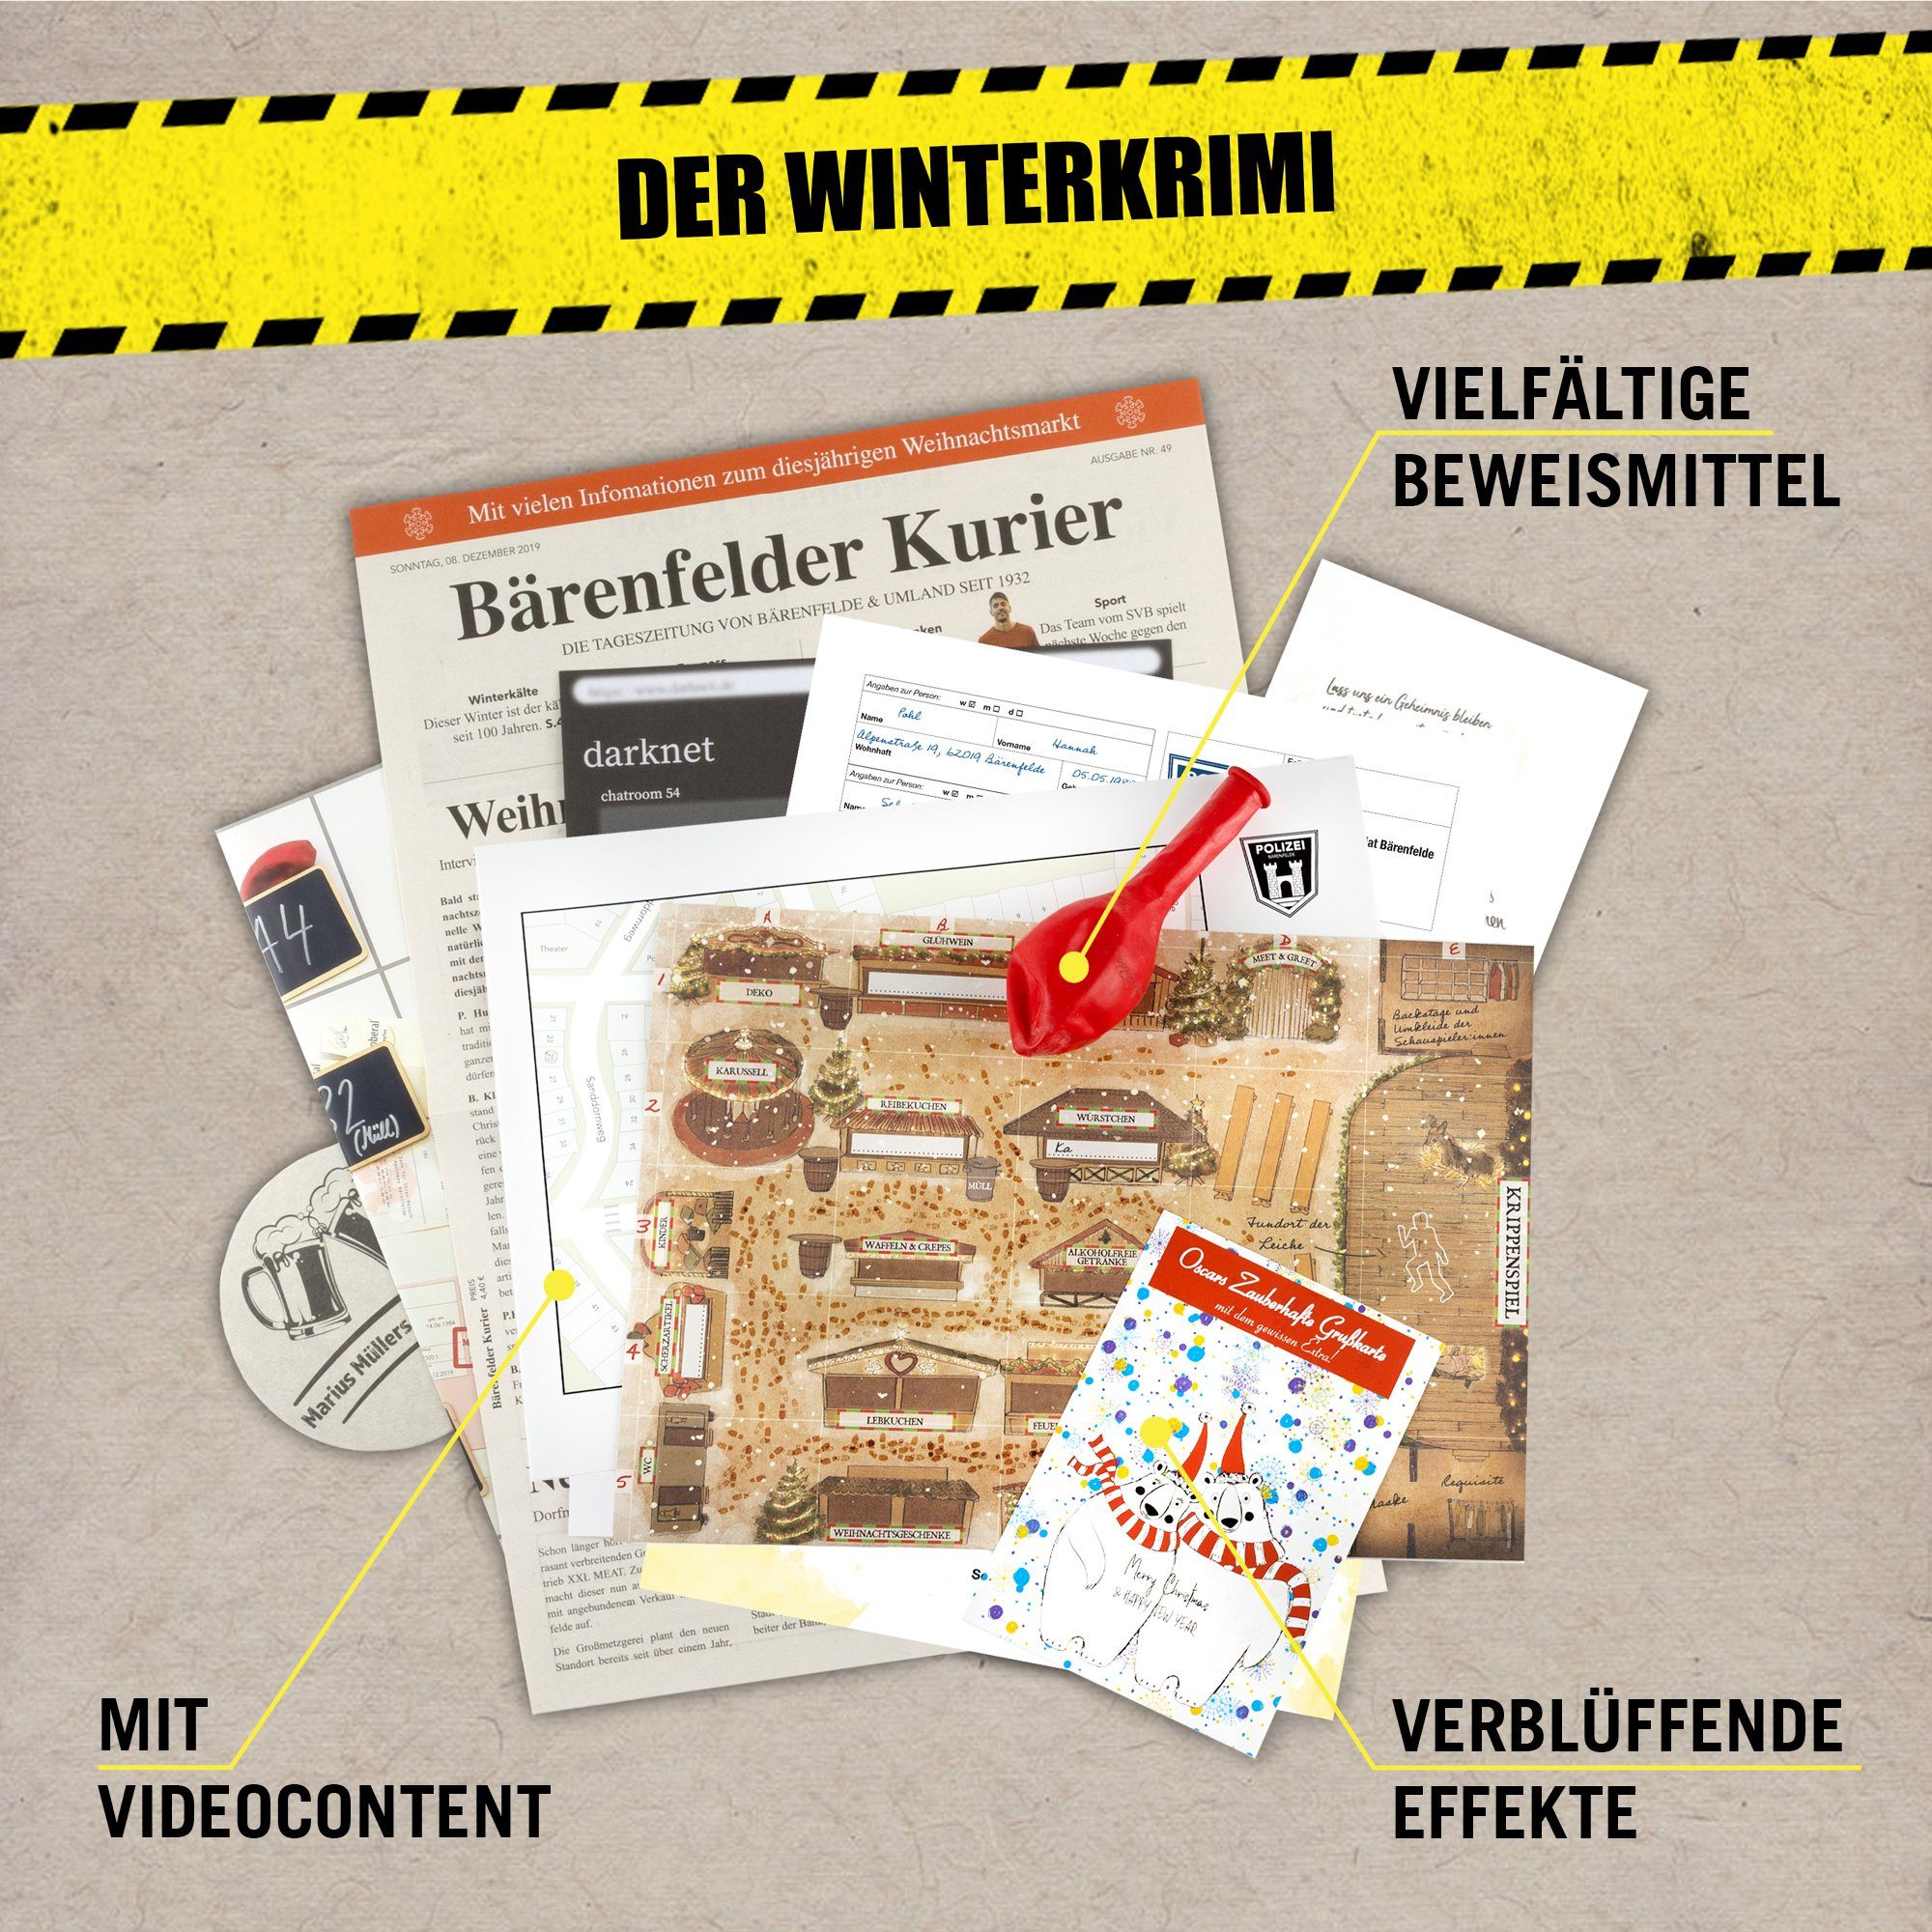 Hidden Games Tatort Spiel, in Germany Eiskaltes Winterkrimi Der Verbrechen, Made